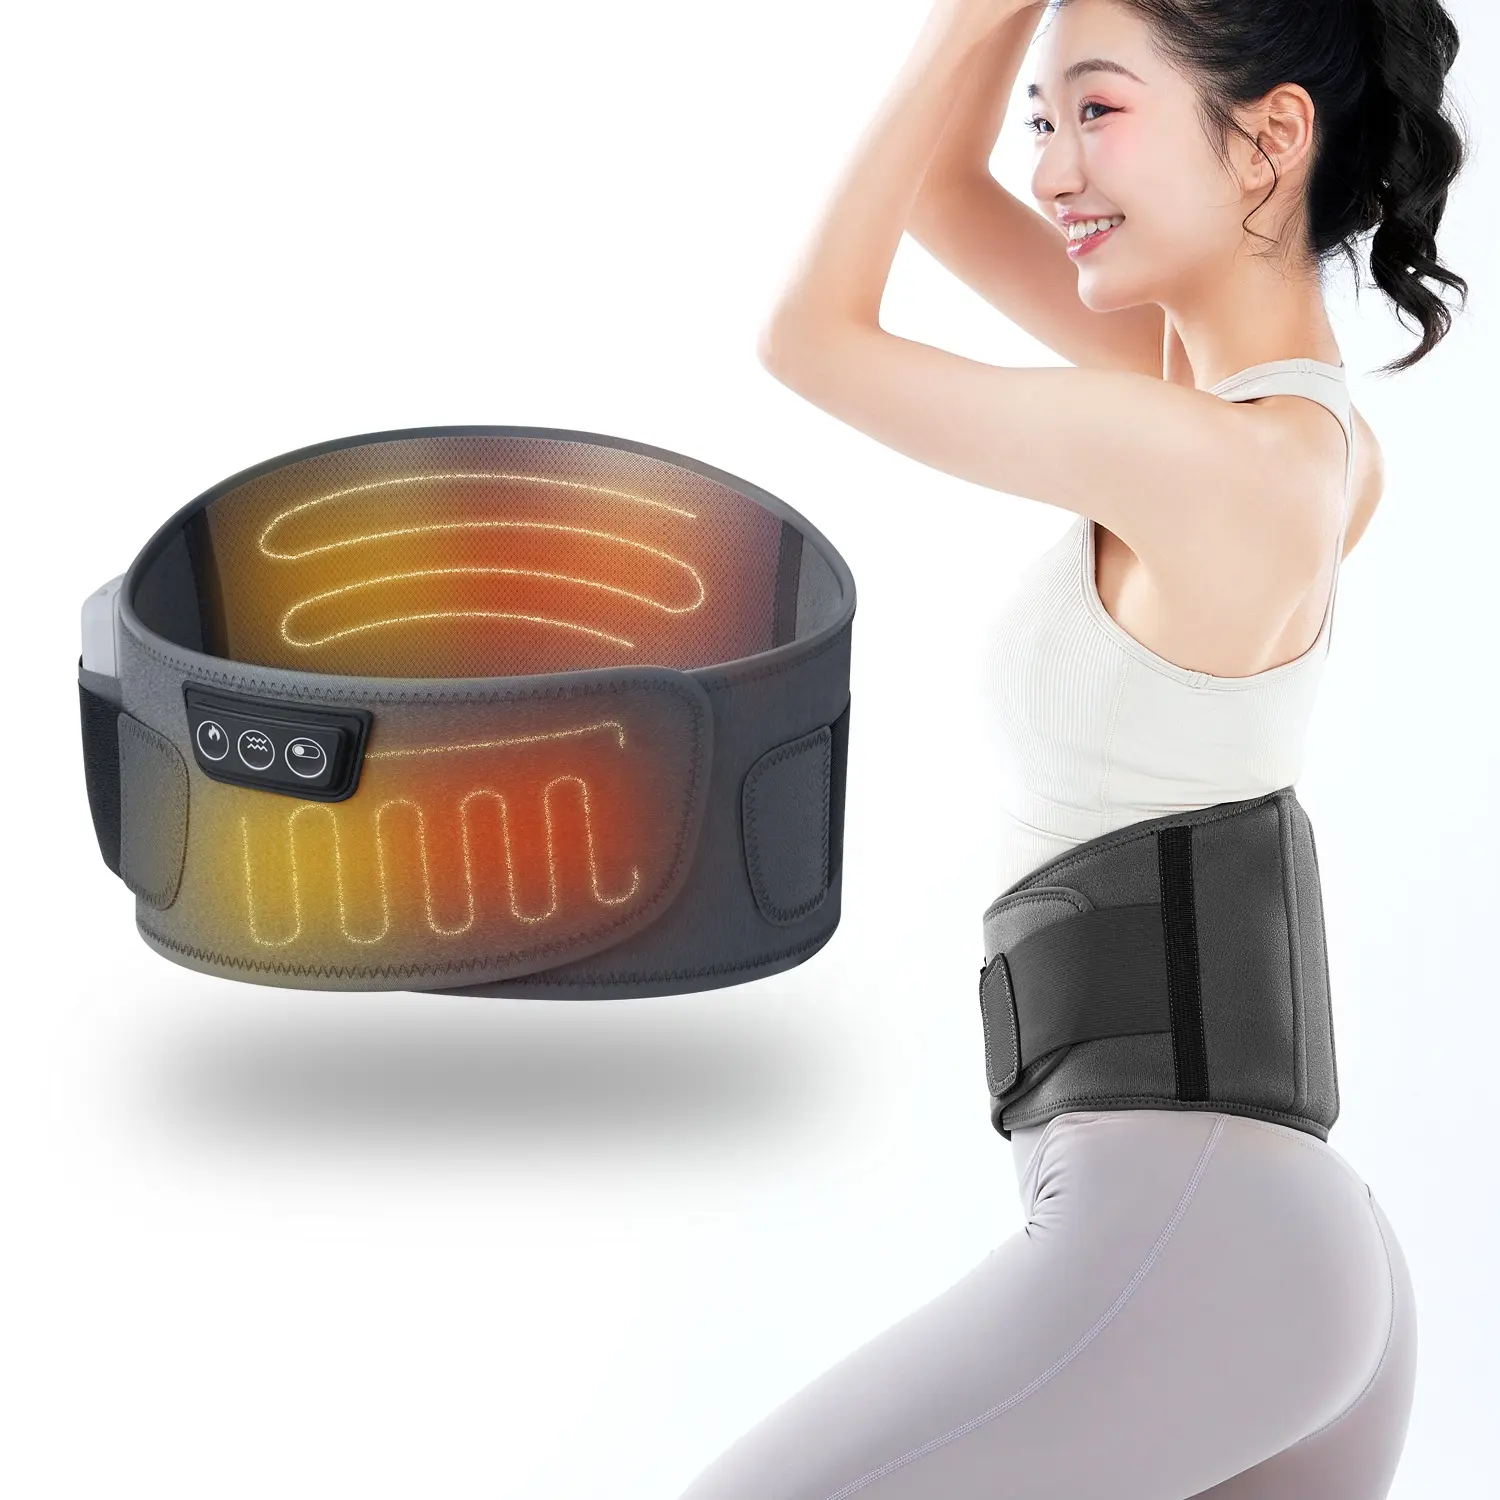 Compresse chaude de la taille et de l'abdomen, appareil électrique de massage du dos, soulagement de la douleur par infrarouge lointain